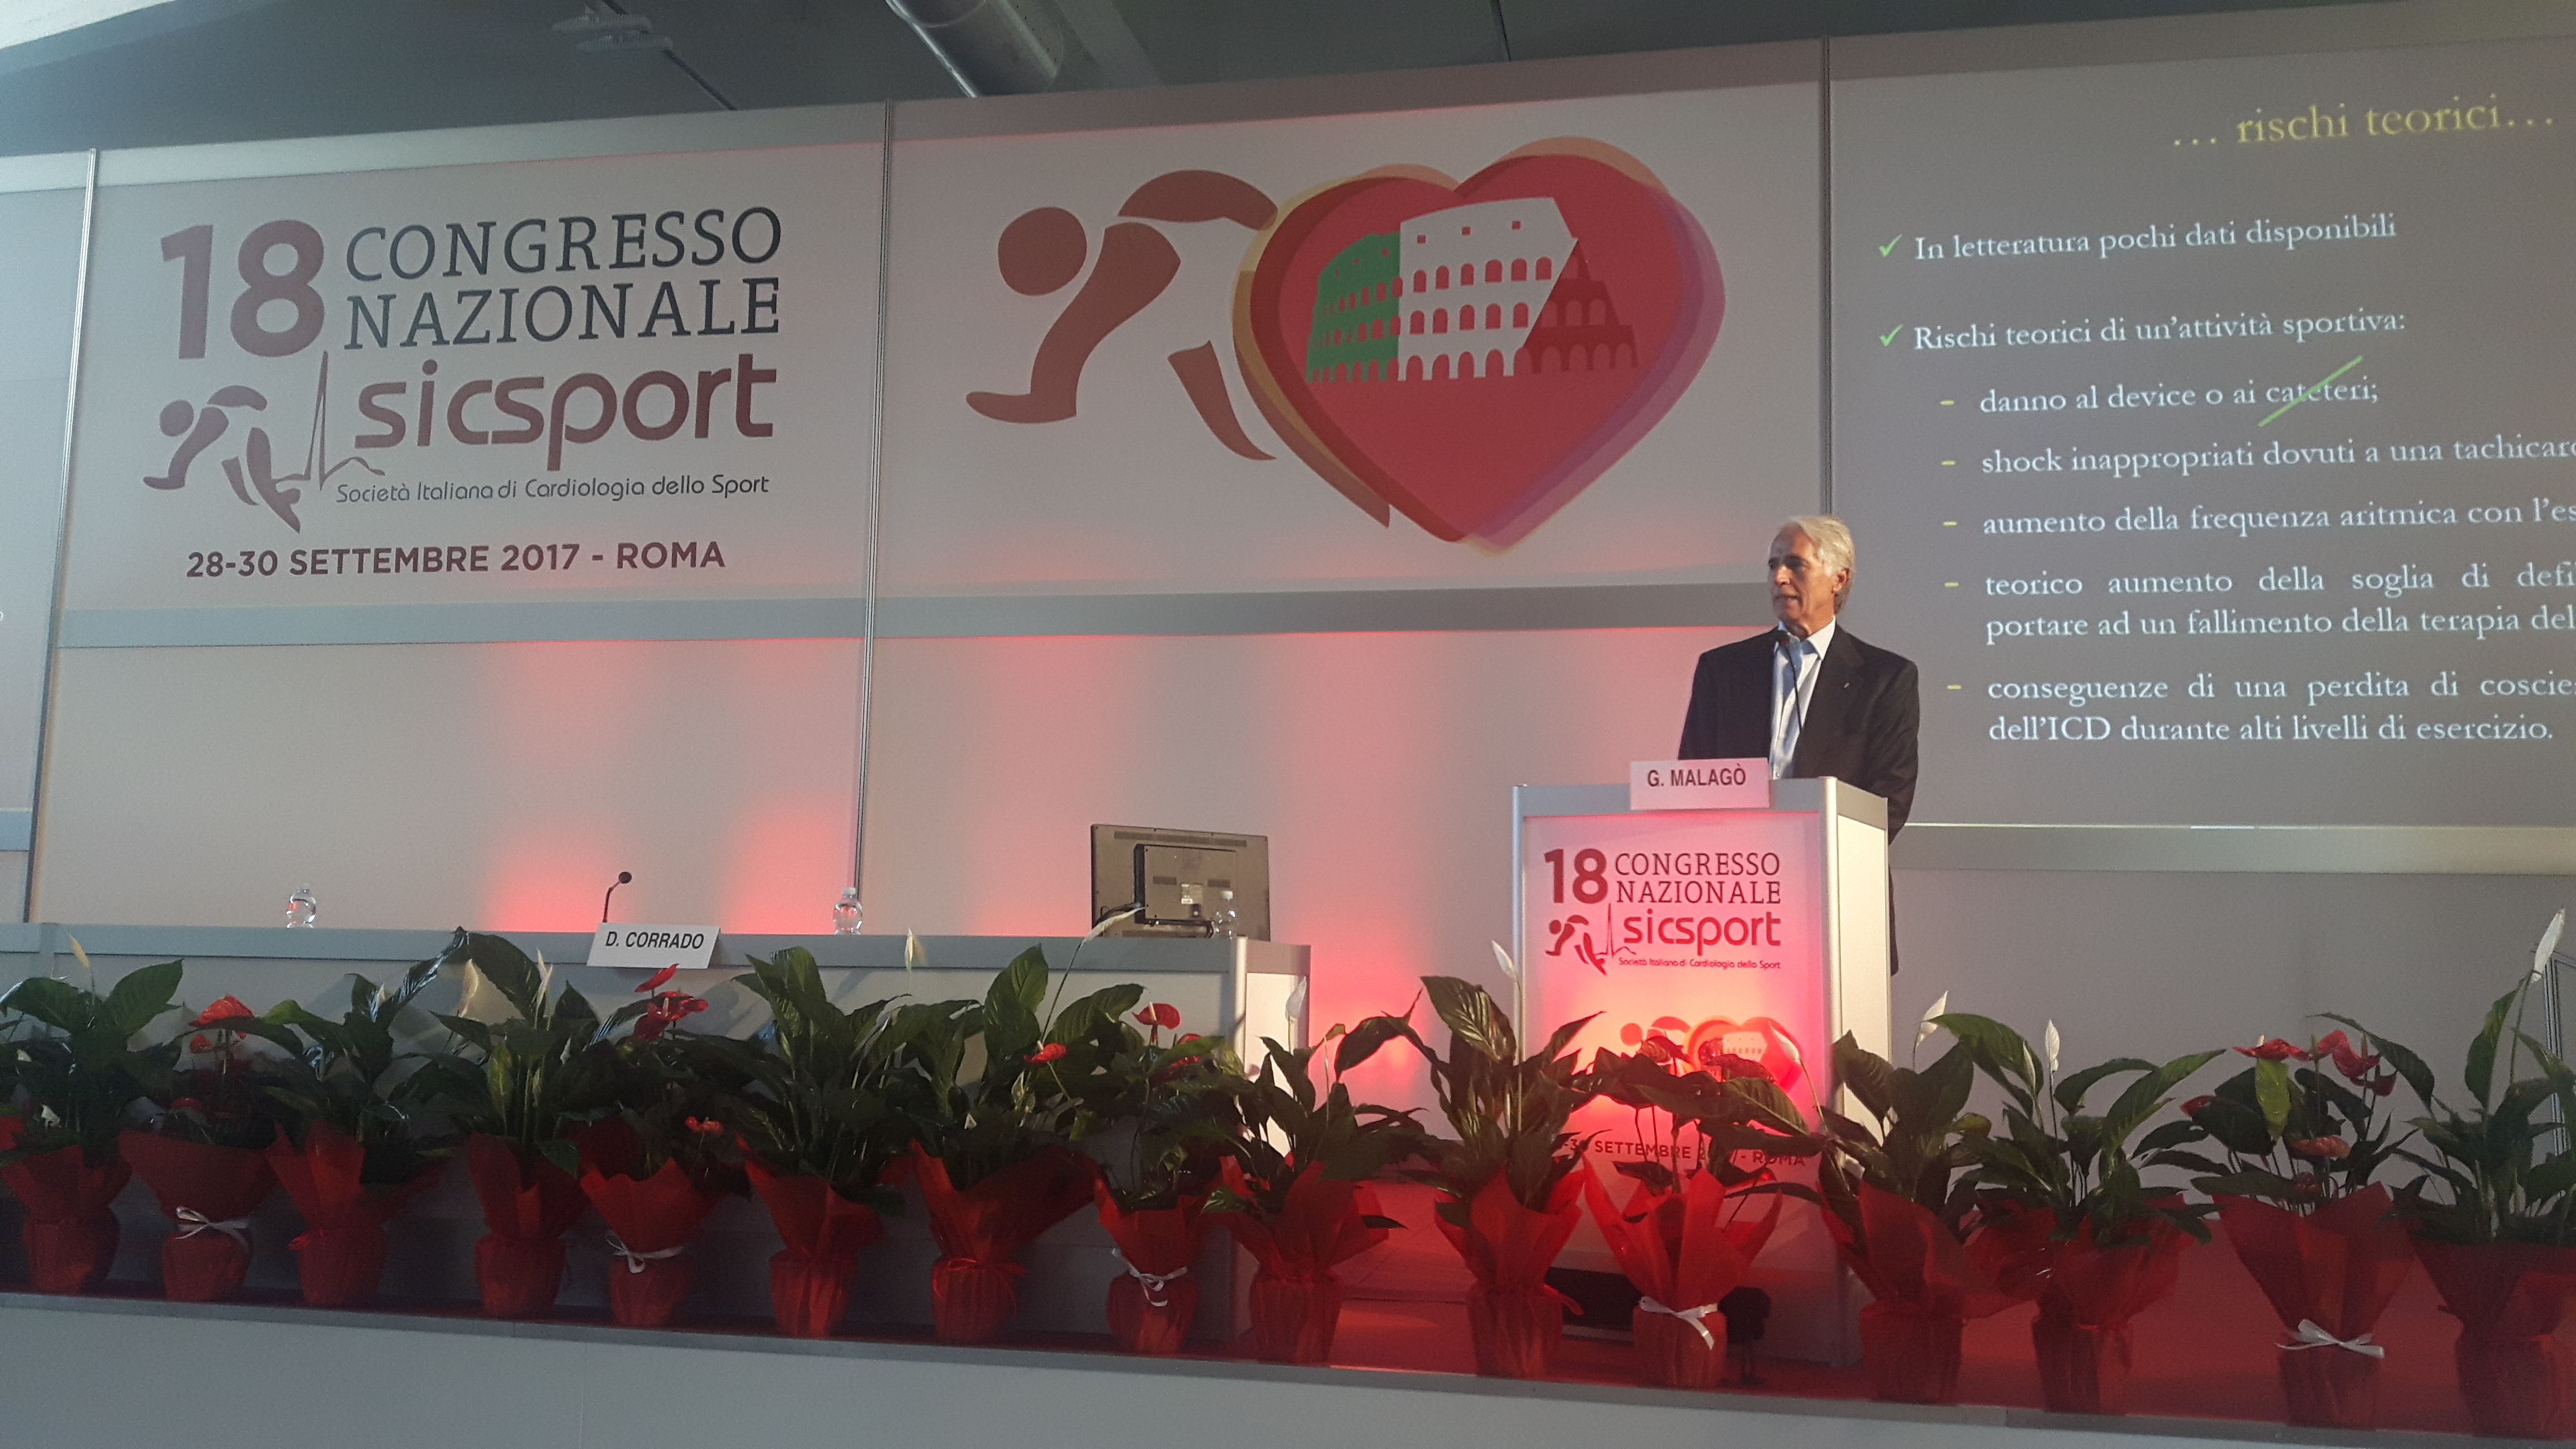 Malagò all'apertura del 18° Congresso Nazionale della Società Italiana di Cardiologia dello Sport